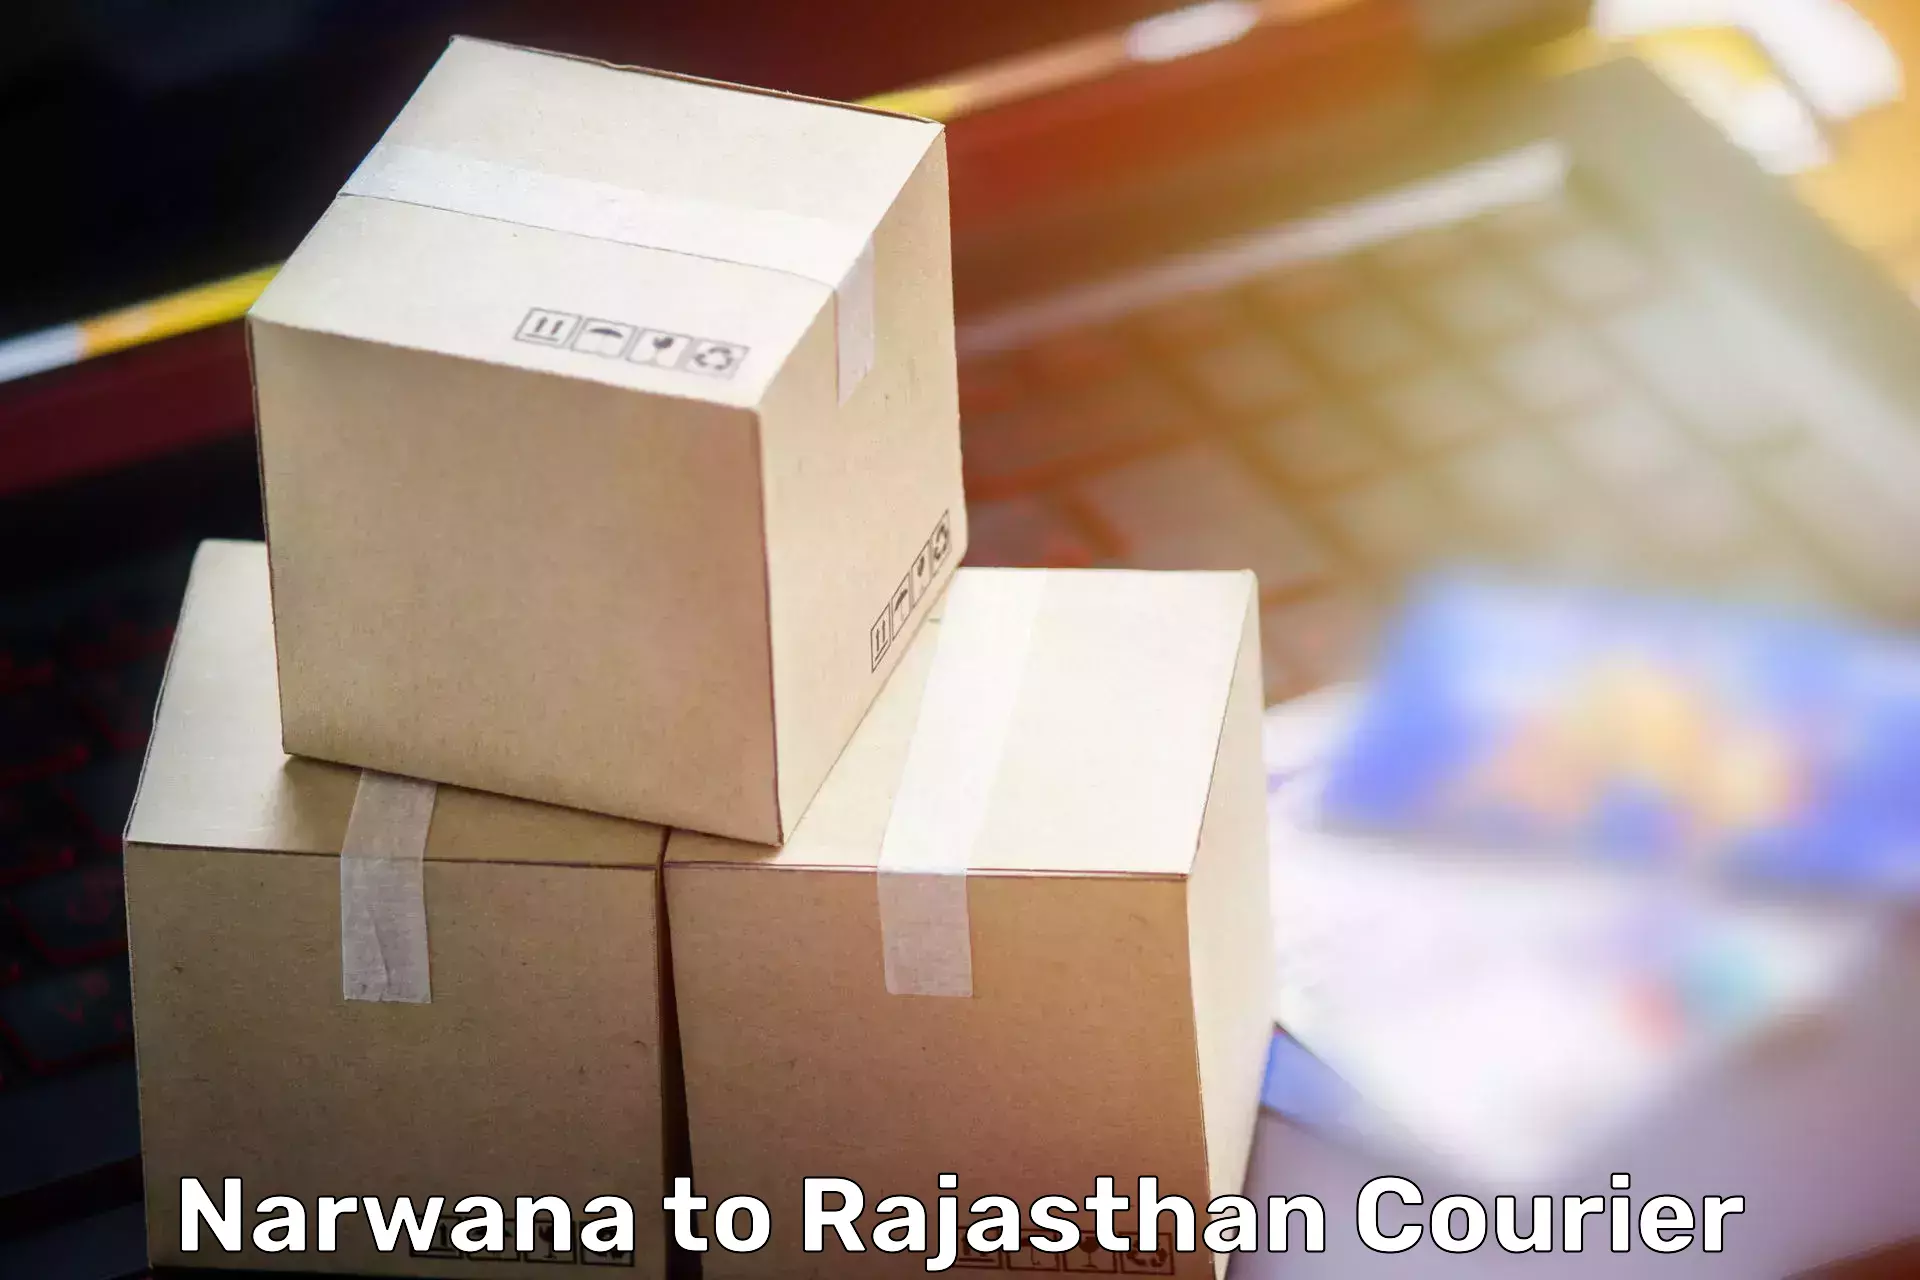 Furniture moving experts Narwana to Bharatpur